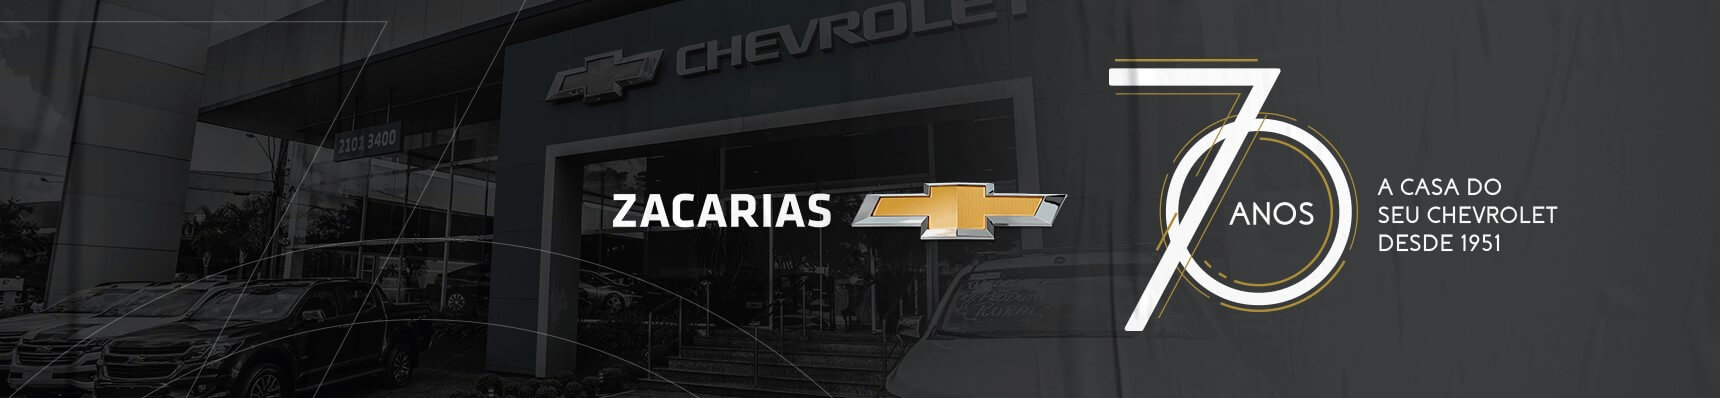 Venda e ofertas de carros novos e seminovos na concessionária Chevrolet Zacarias de Maringá. Peças genuínas GM, acessórios automotivos originais e serviços de manutenção e revisão de veículos.